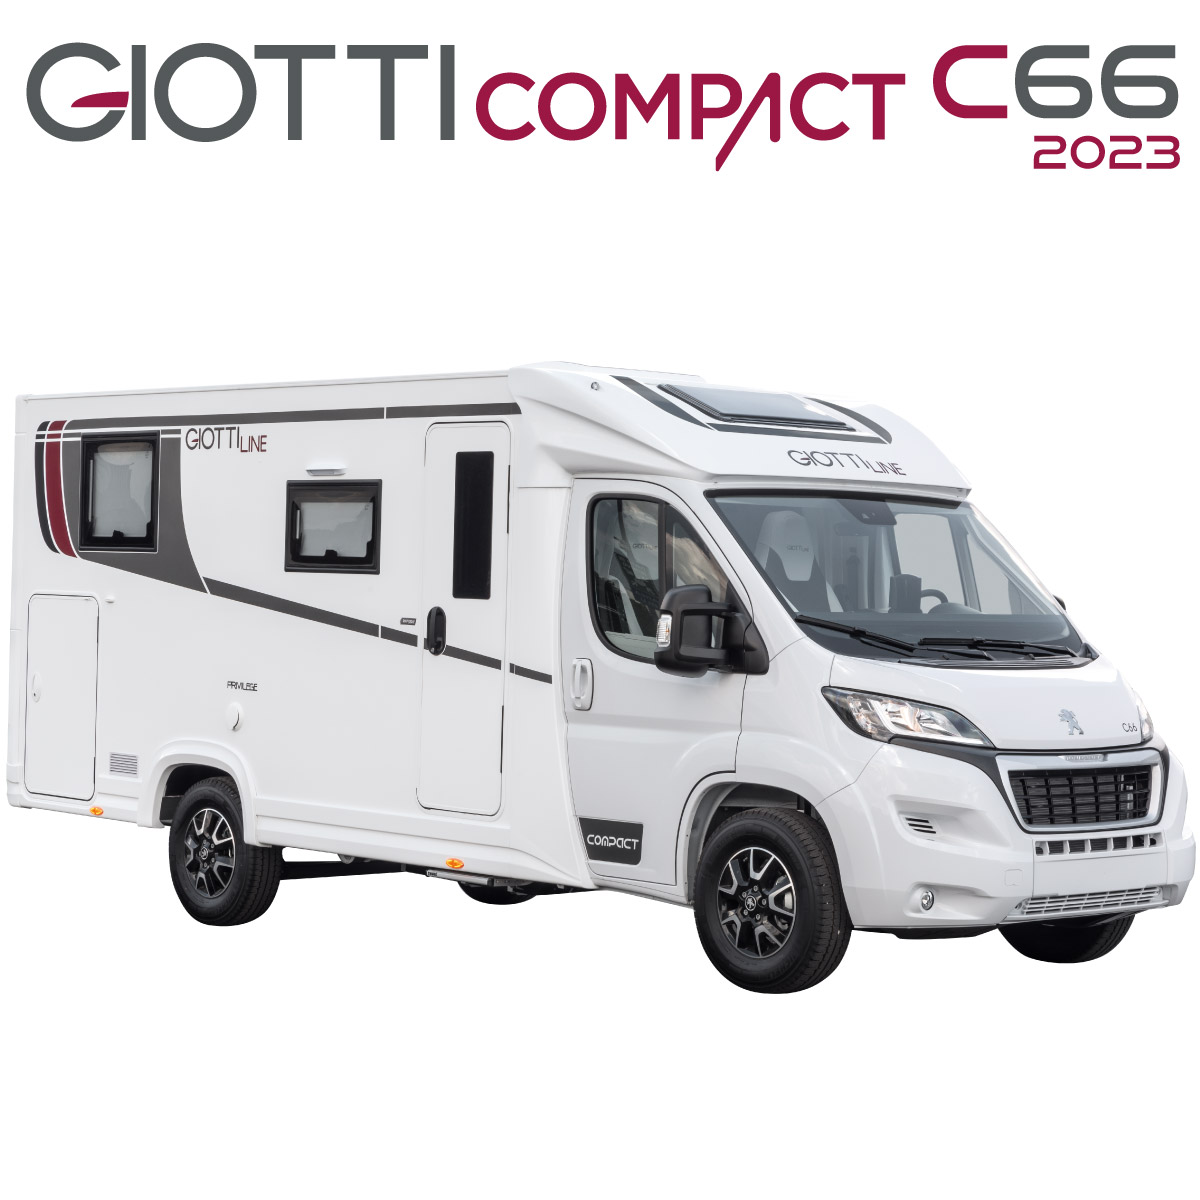 GiottiLine Compact C66 2023 Autocaravanas en León portada